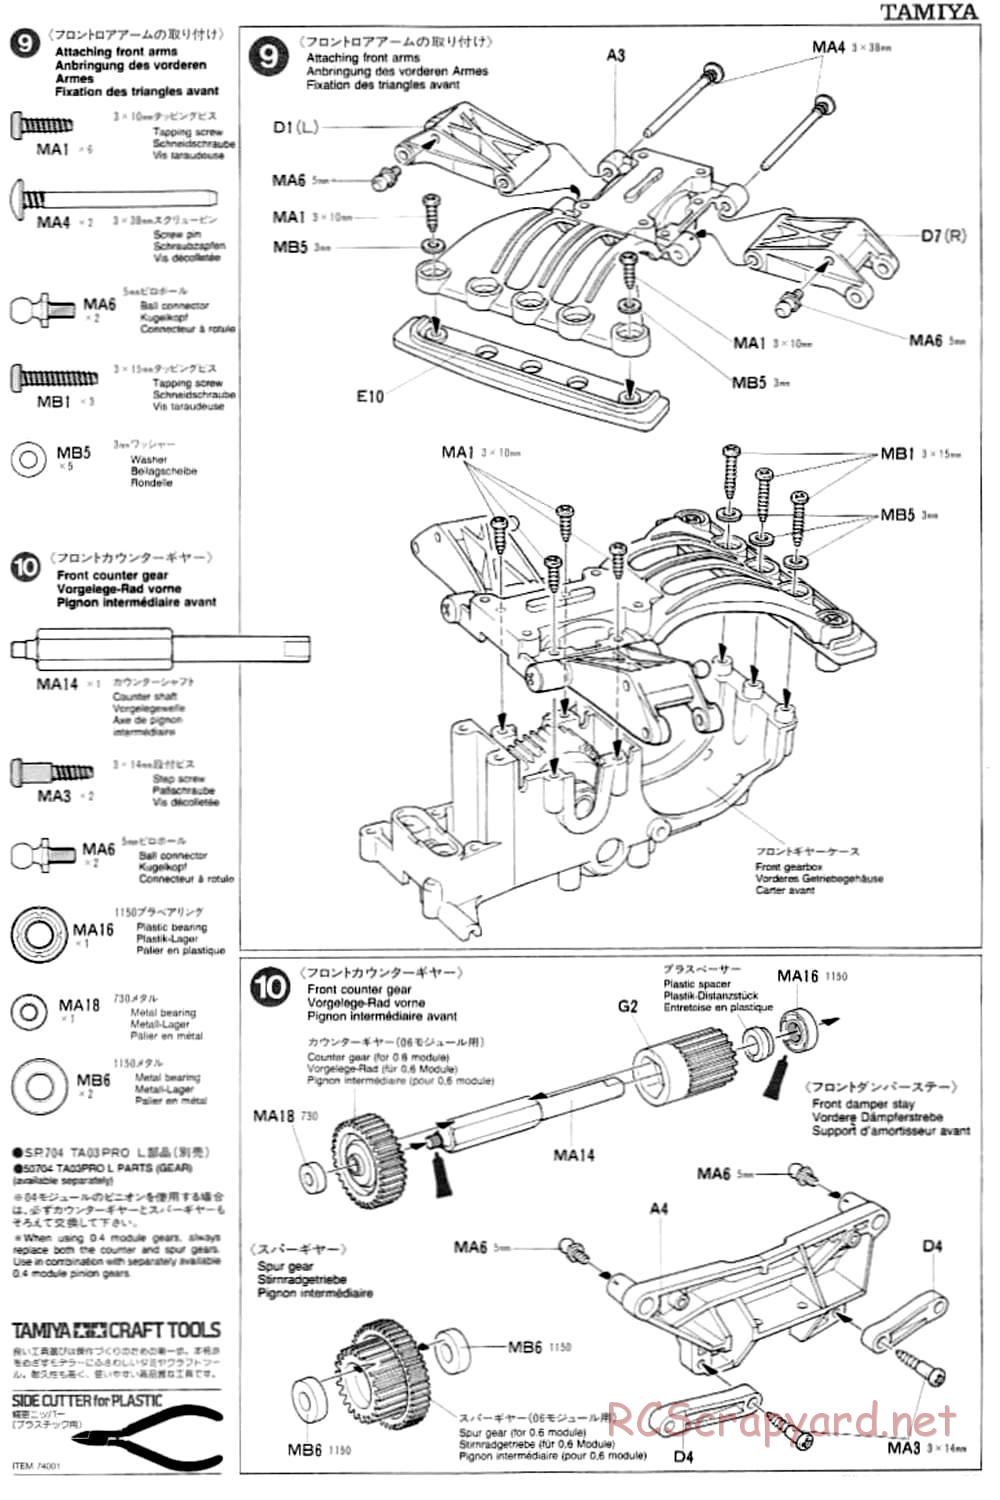 Tamiya - TA-03F Chassis - Manual - Page 7